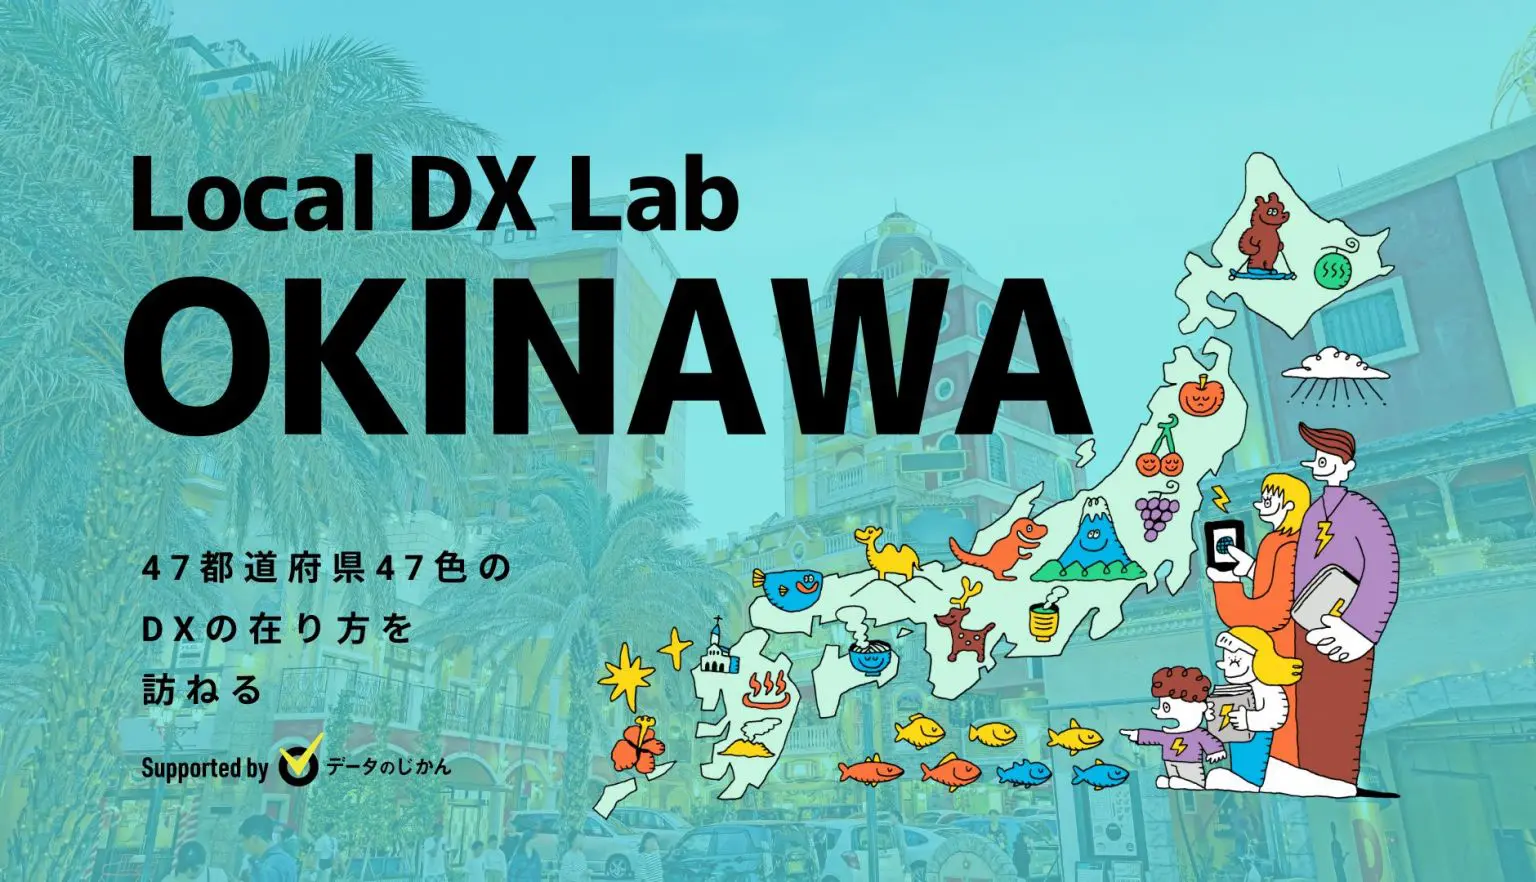 沖縄県の地域DX・デジタル化支援一覧47都道府県47色のDXの在り方を訪ねるLocalDXLab